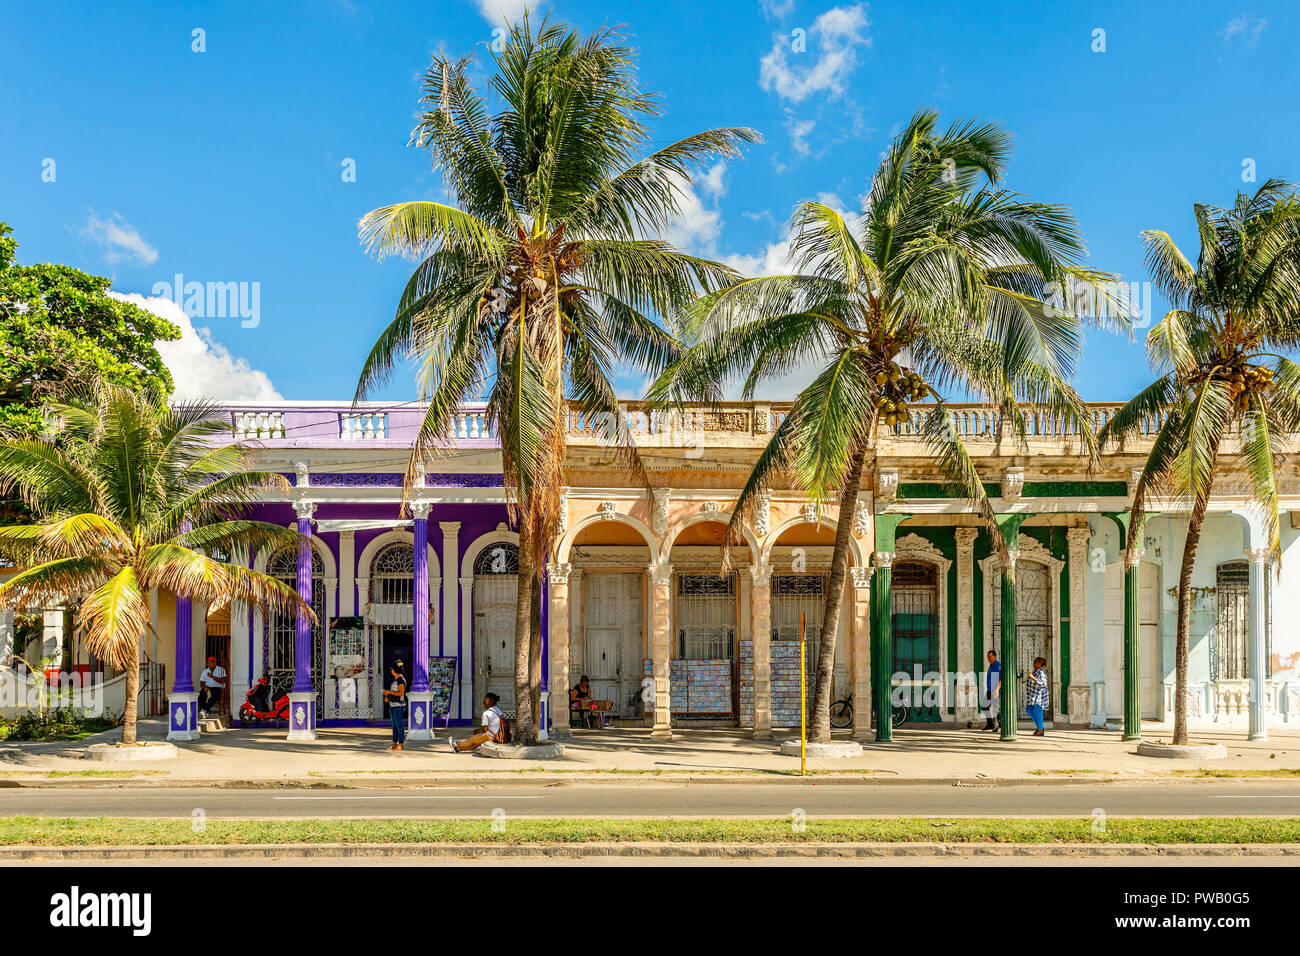 Vecchio stile coloniale spagnolo case colorate con le palme in primo piano, attraversata la strada al centro di Cienfuegos, Cuba Foto Stock